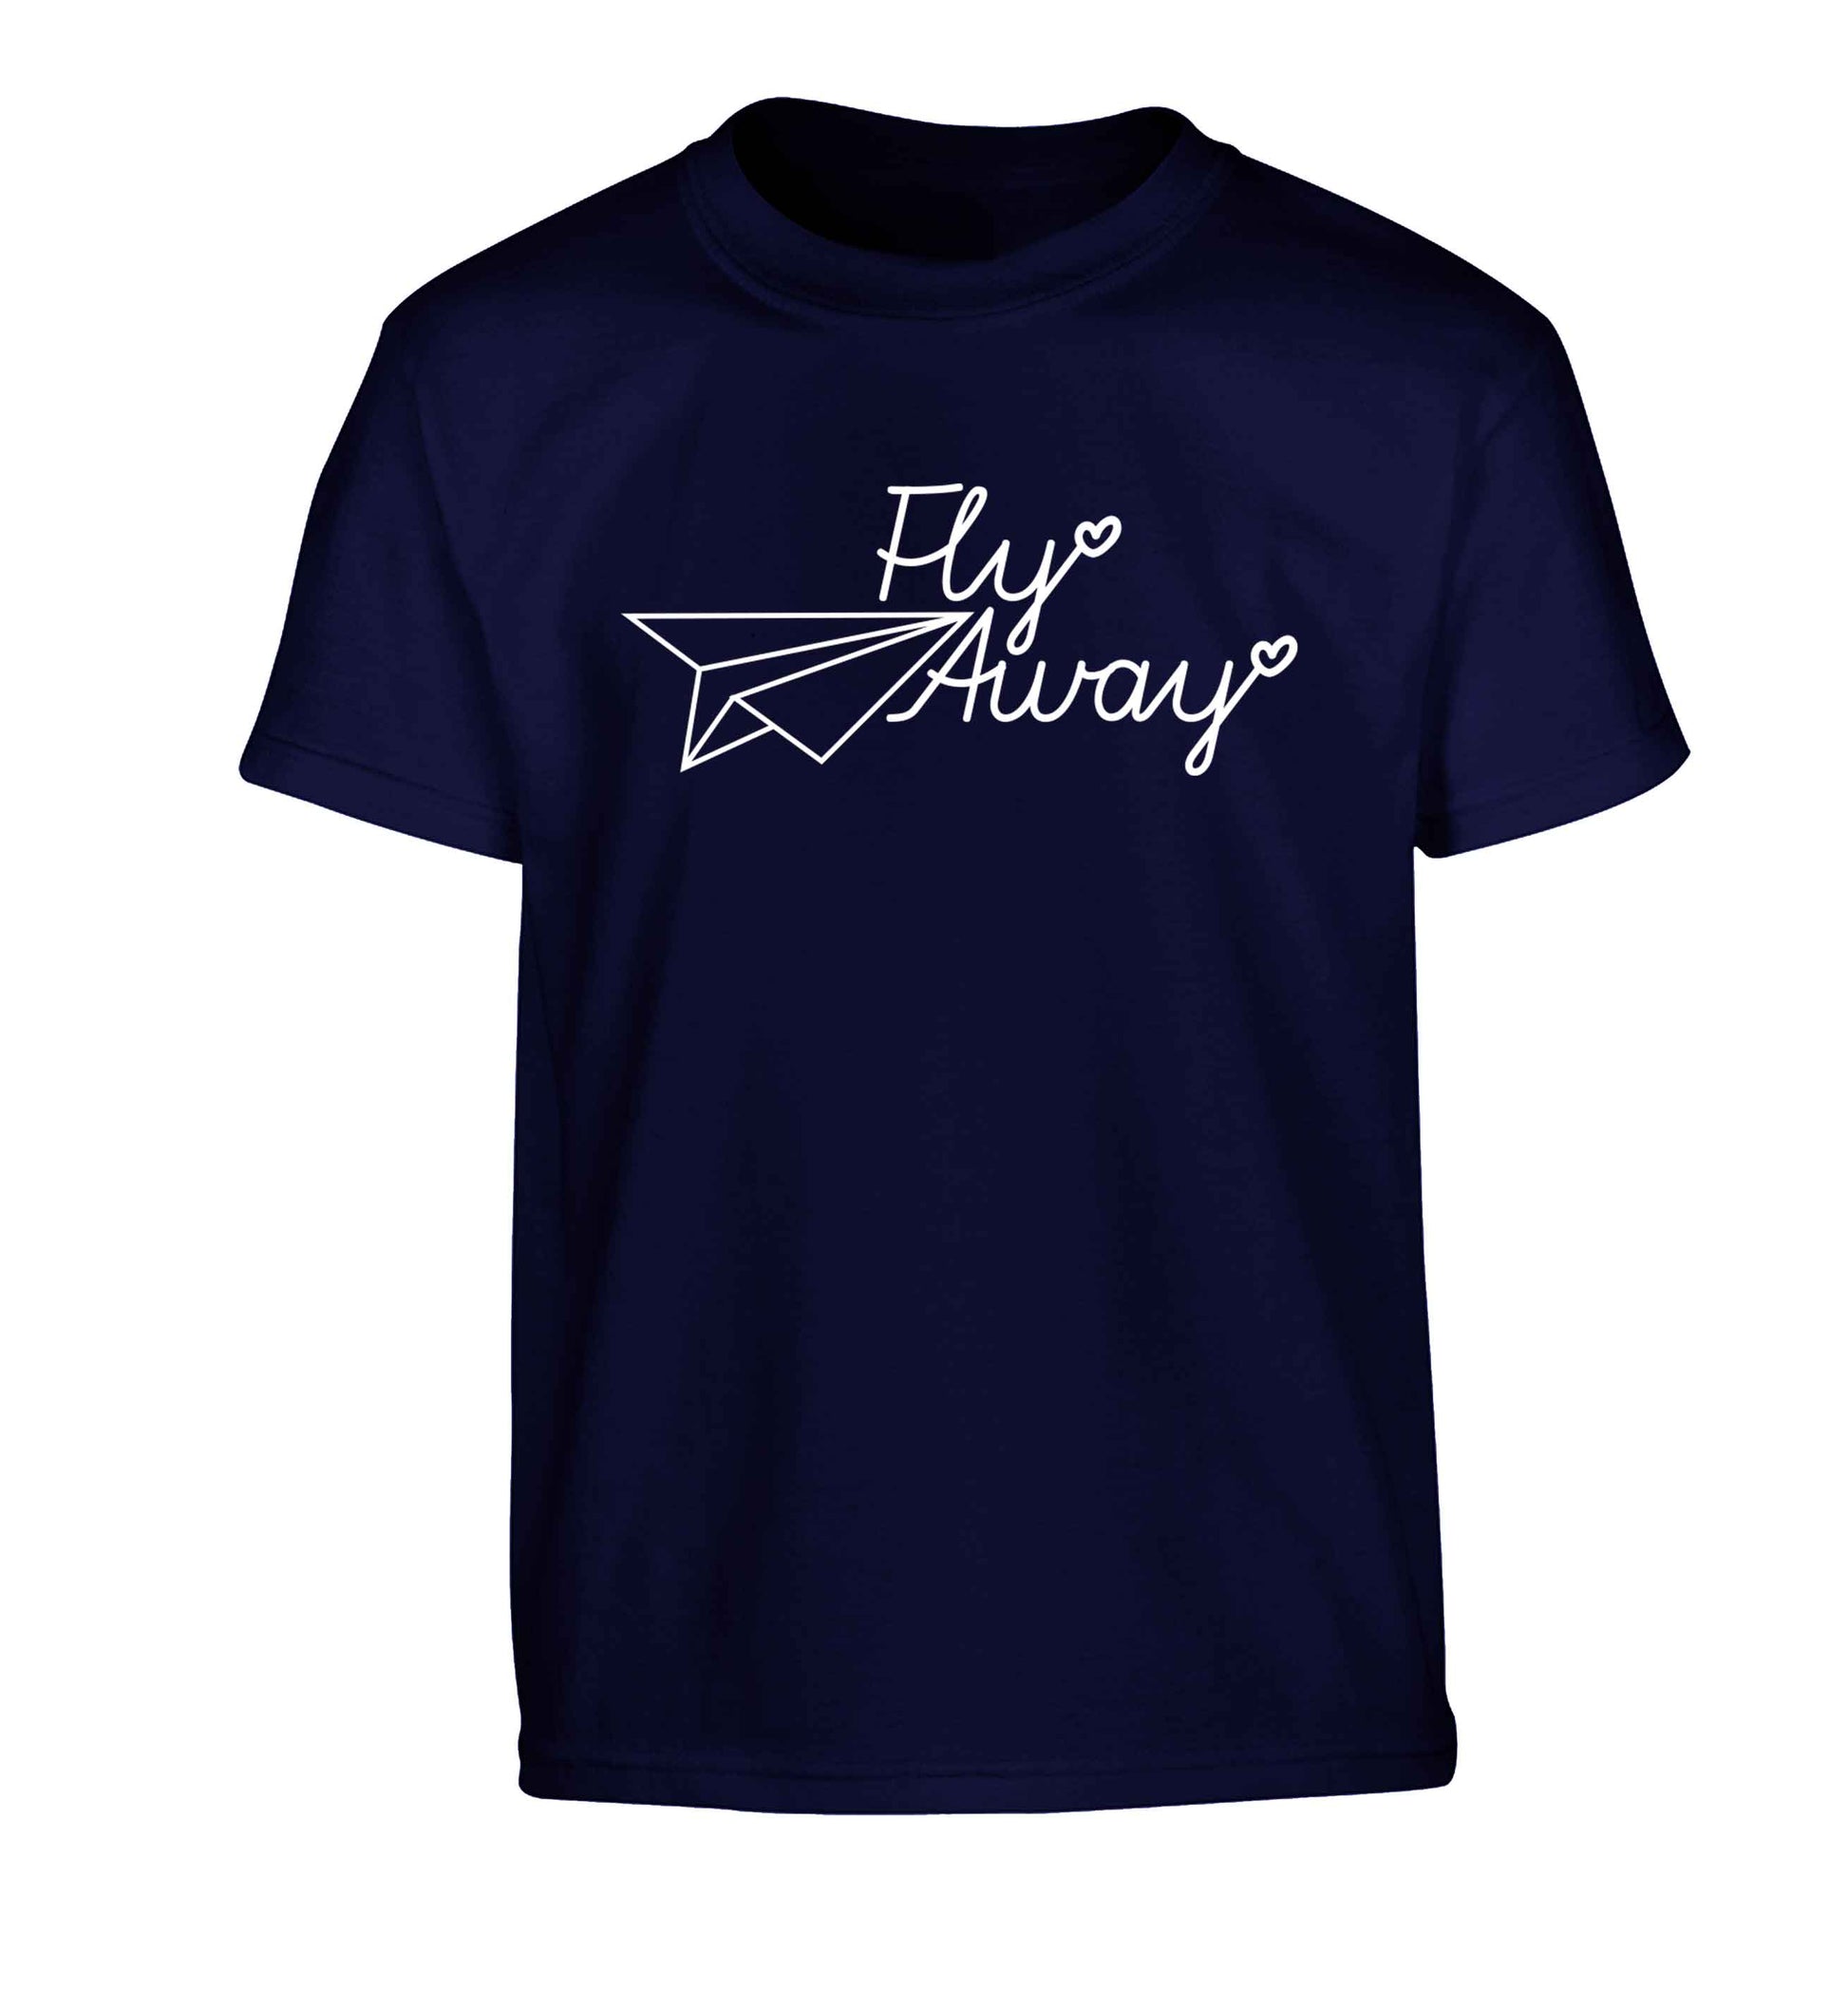 Fly away Children's navy Tshirt 12-13 Years